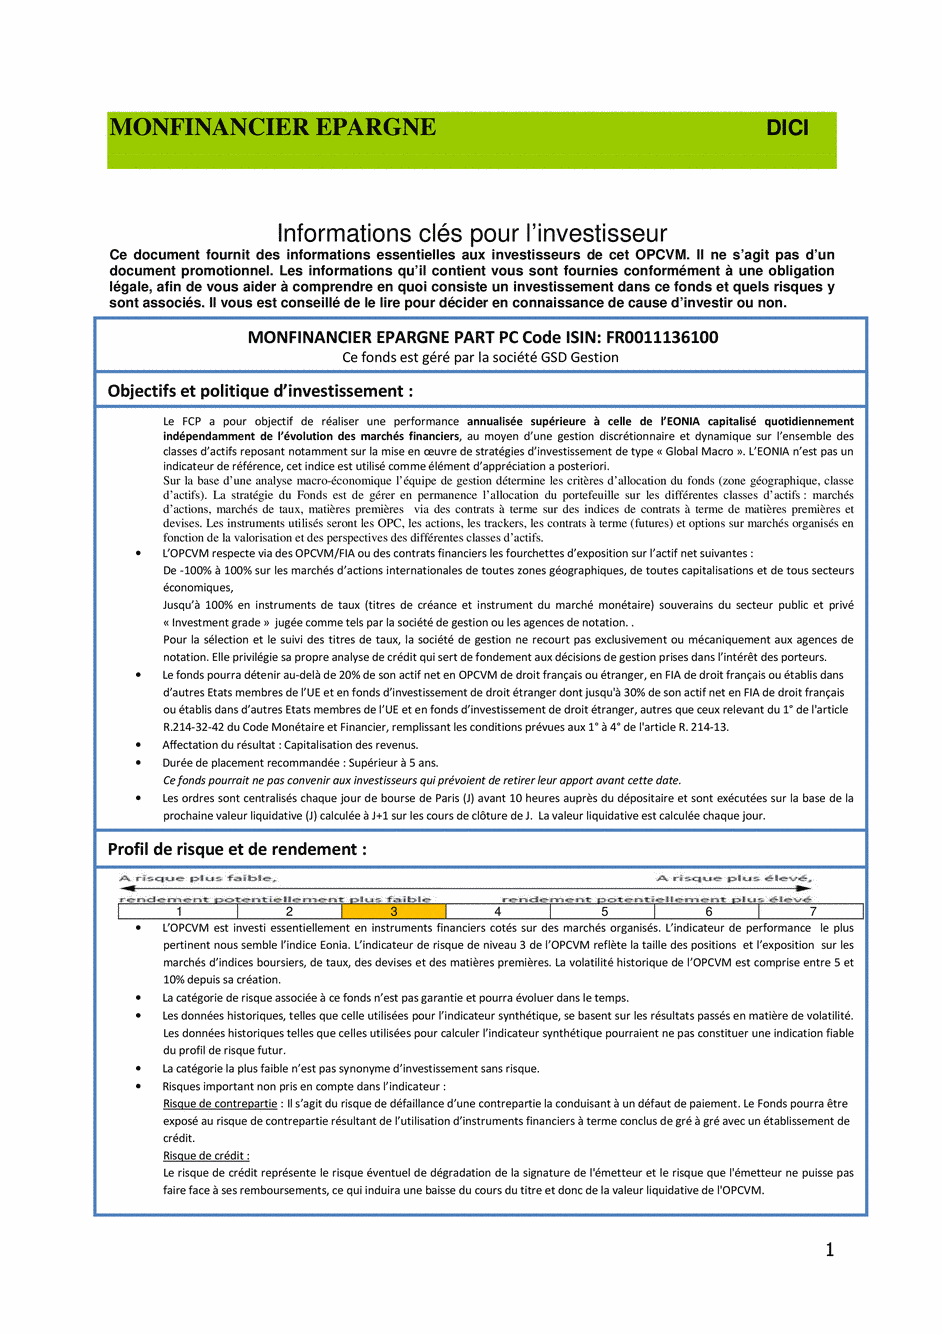 DICI-Prospectus Monfinancier Epargne - 12/06/2019 - undefined